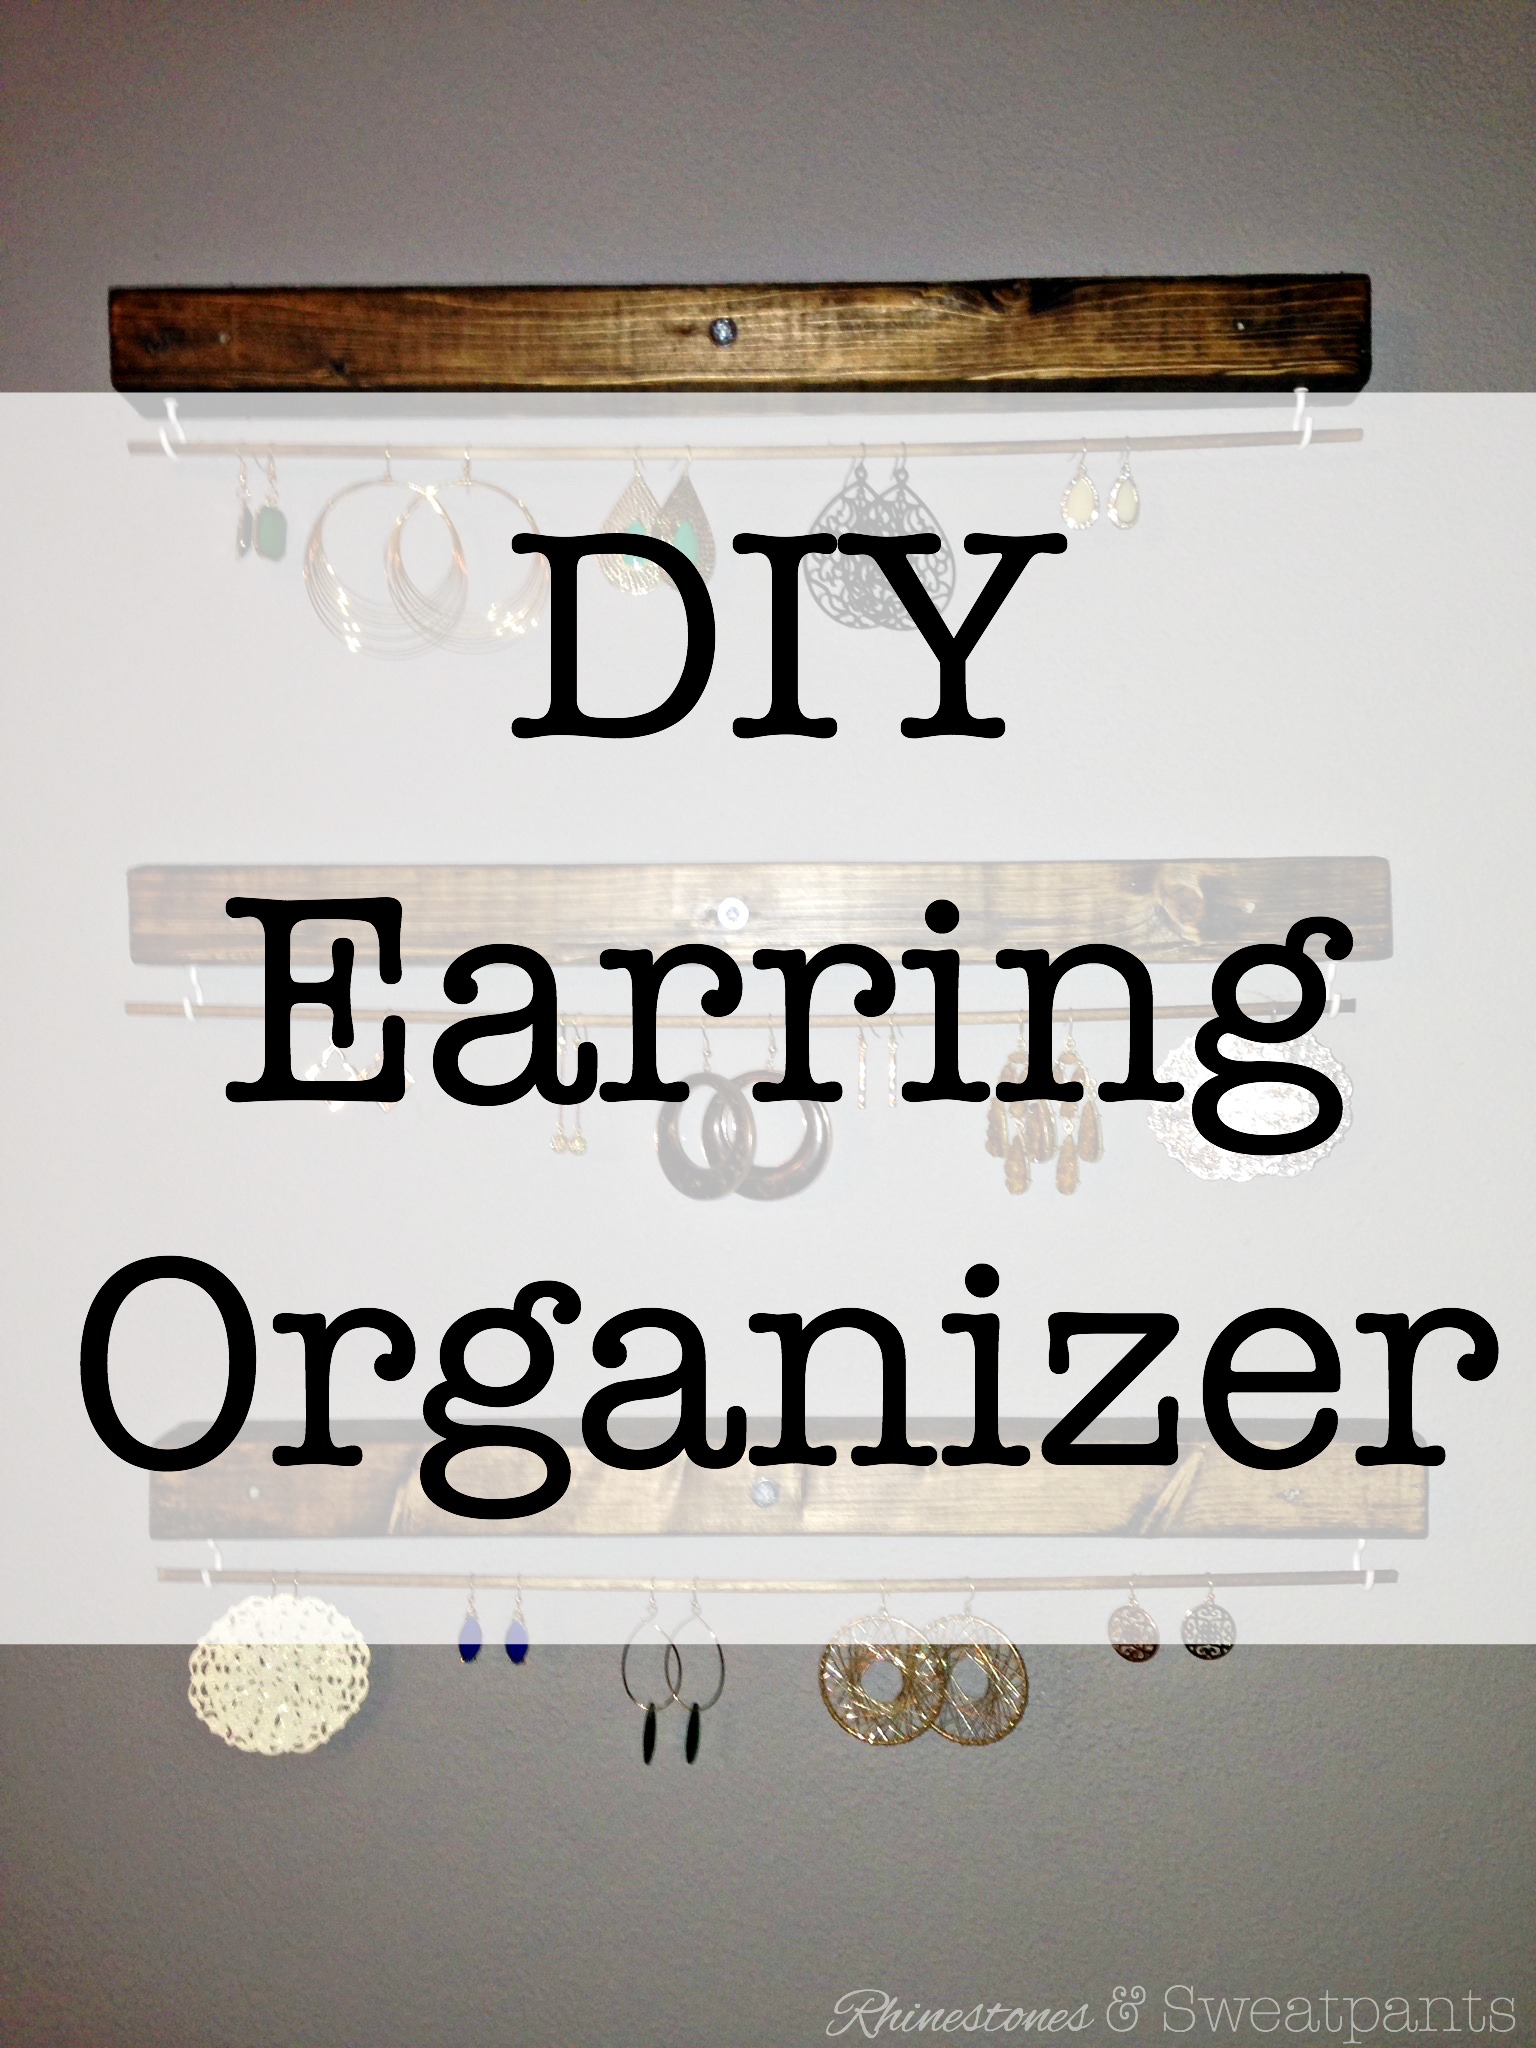 DIY Earring Organizer